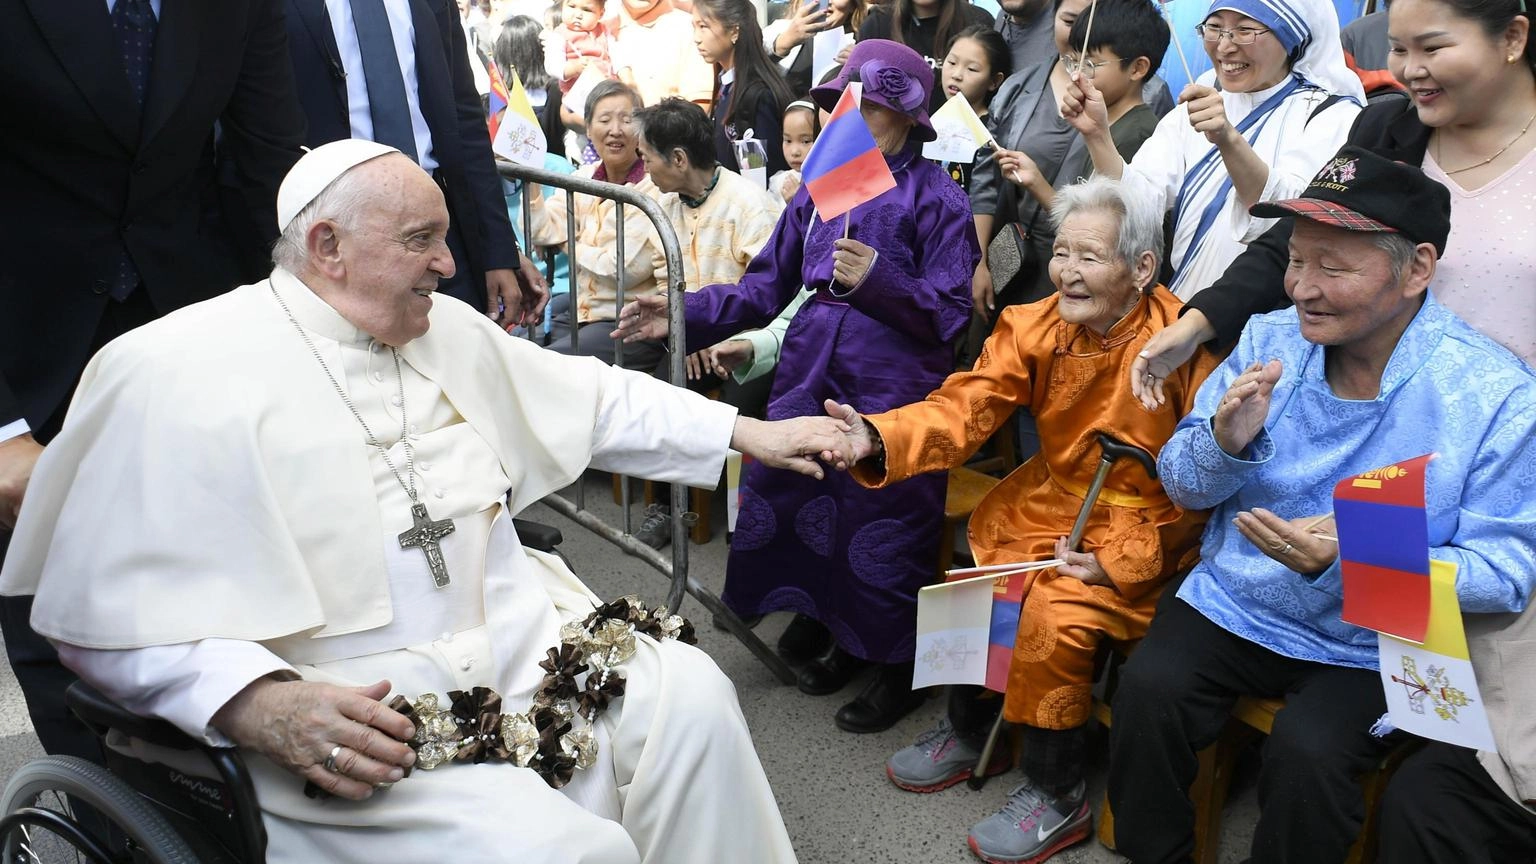 Il Papa, diamoci da fare e costruiamo insieme futuro di pace